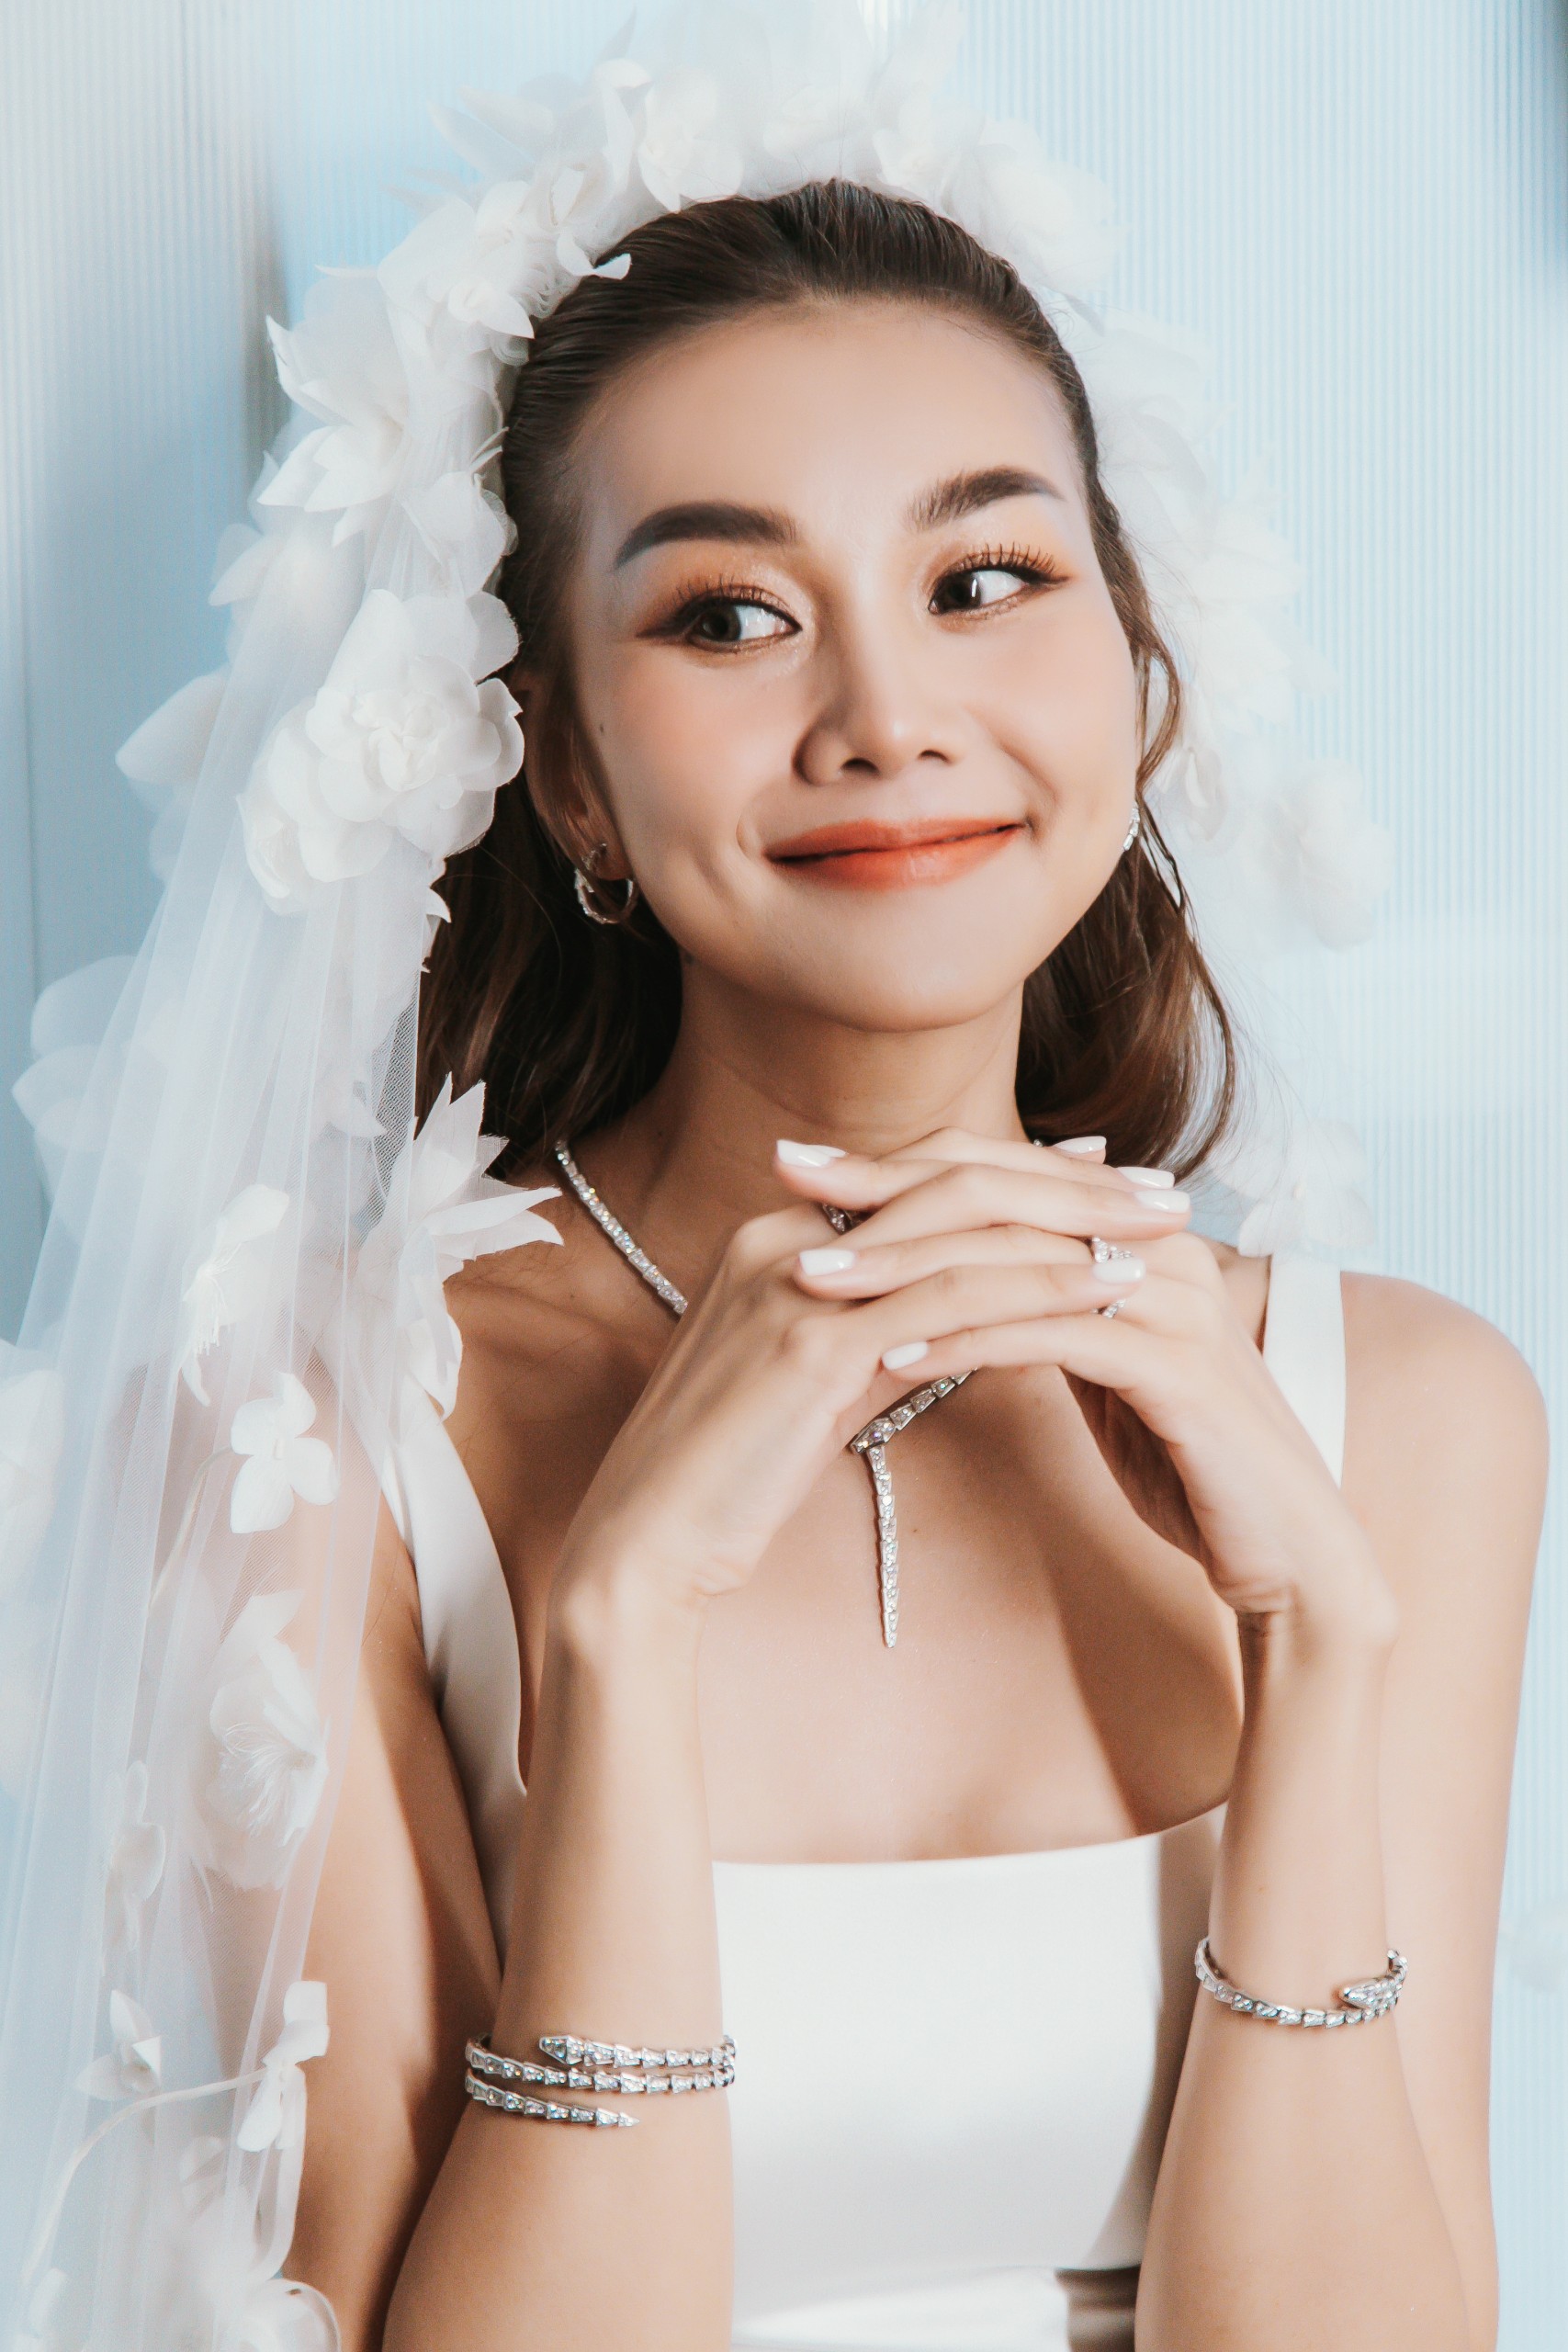 Siêu mẫu Thanh Hằng đeo trang sức hơn 10 tỉ đồng trong đám cưới - Ảnh 7.